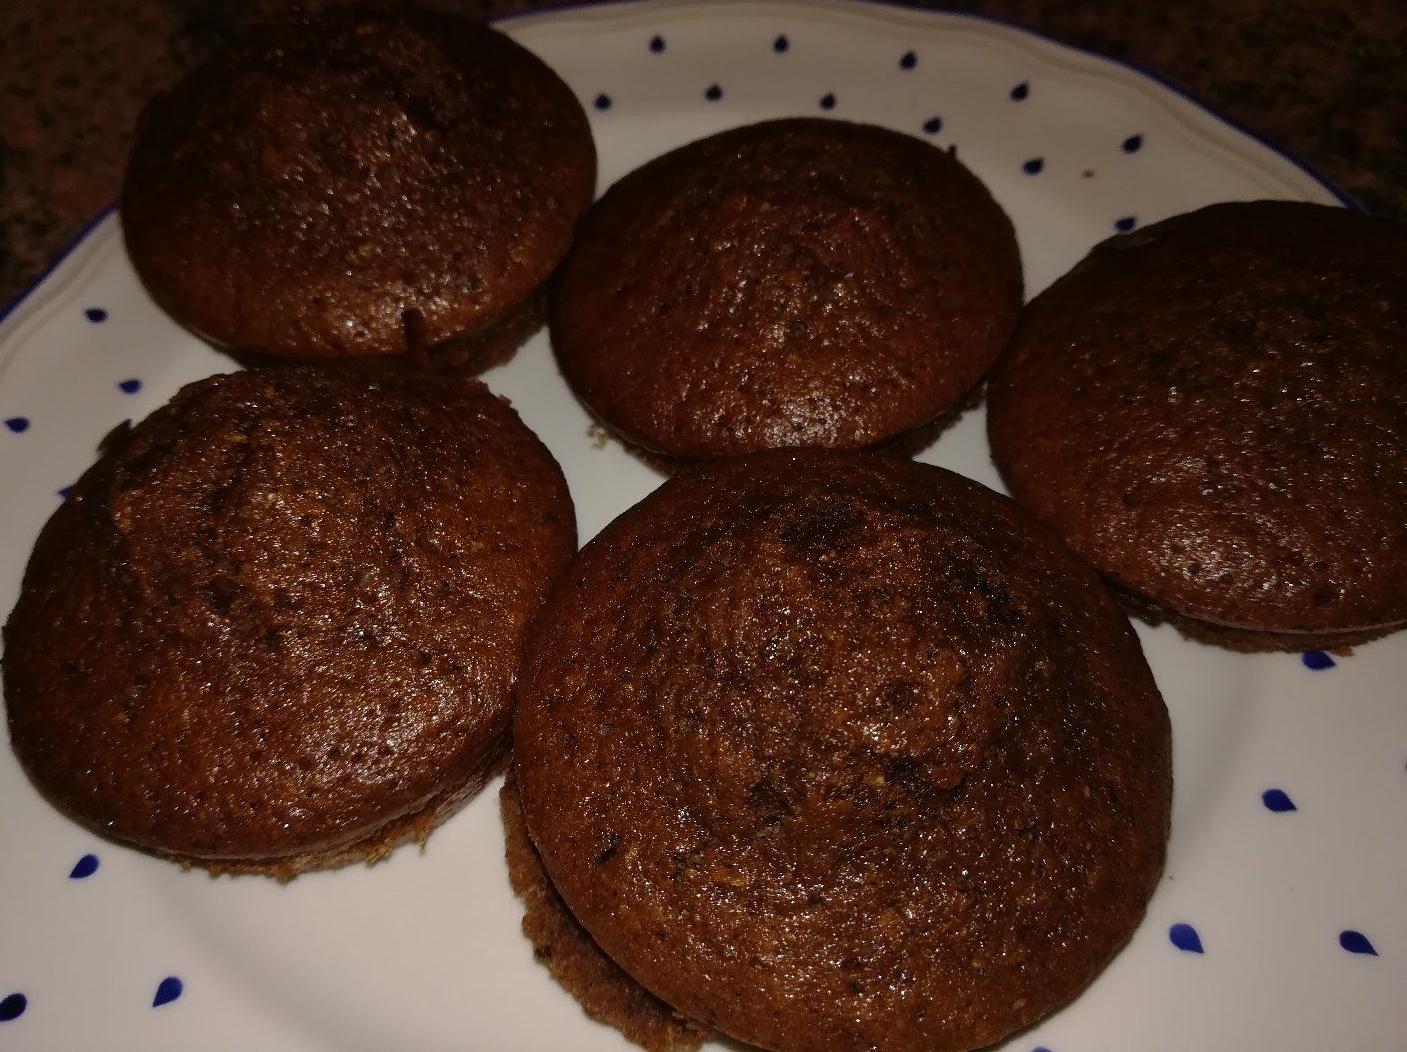 Muffin al cacao con farina integrale